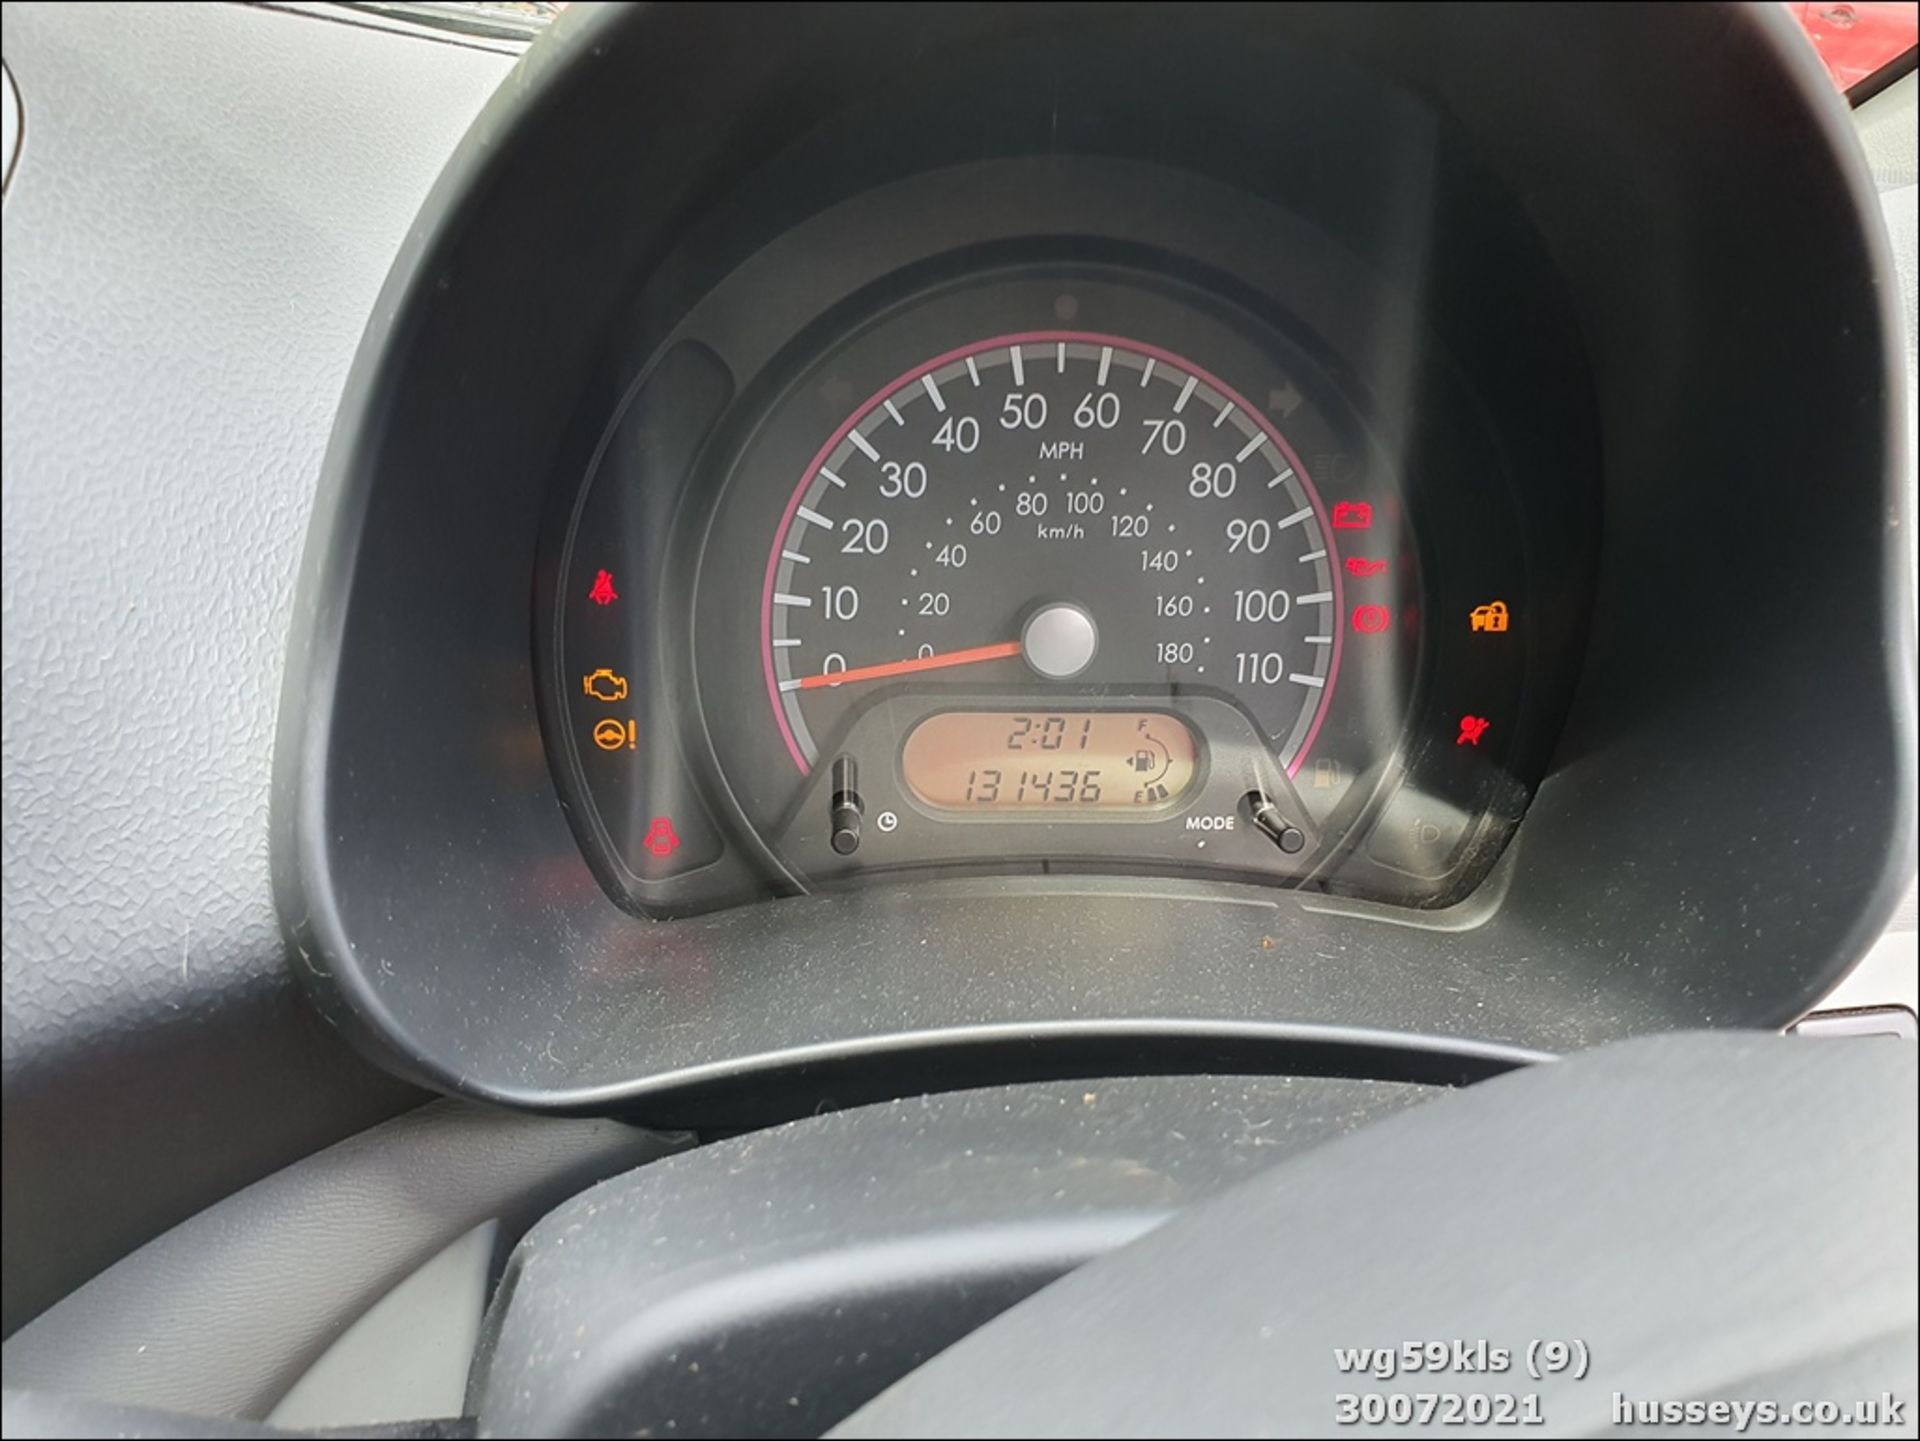 09/59 SUZUKI ALTO SZ3 - 996cc 5dr Hatchback (Red, 131k) - Image 10 of 13